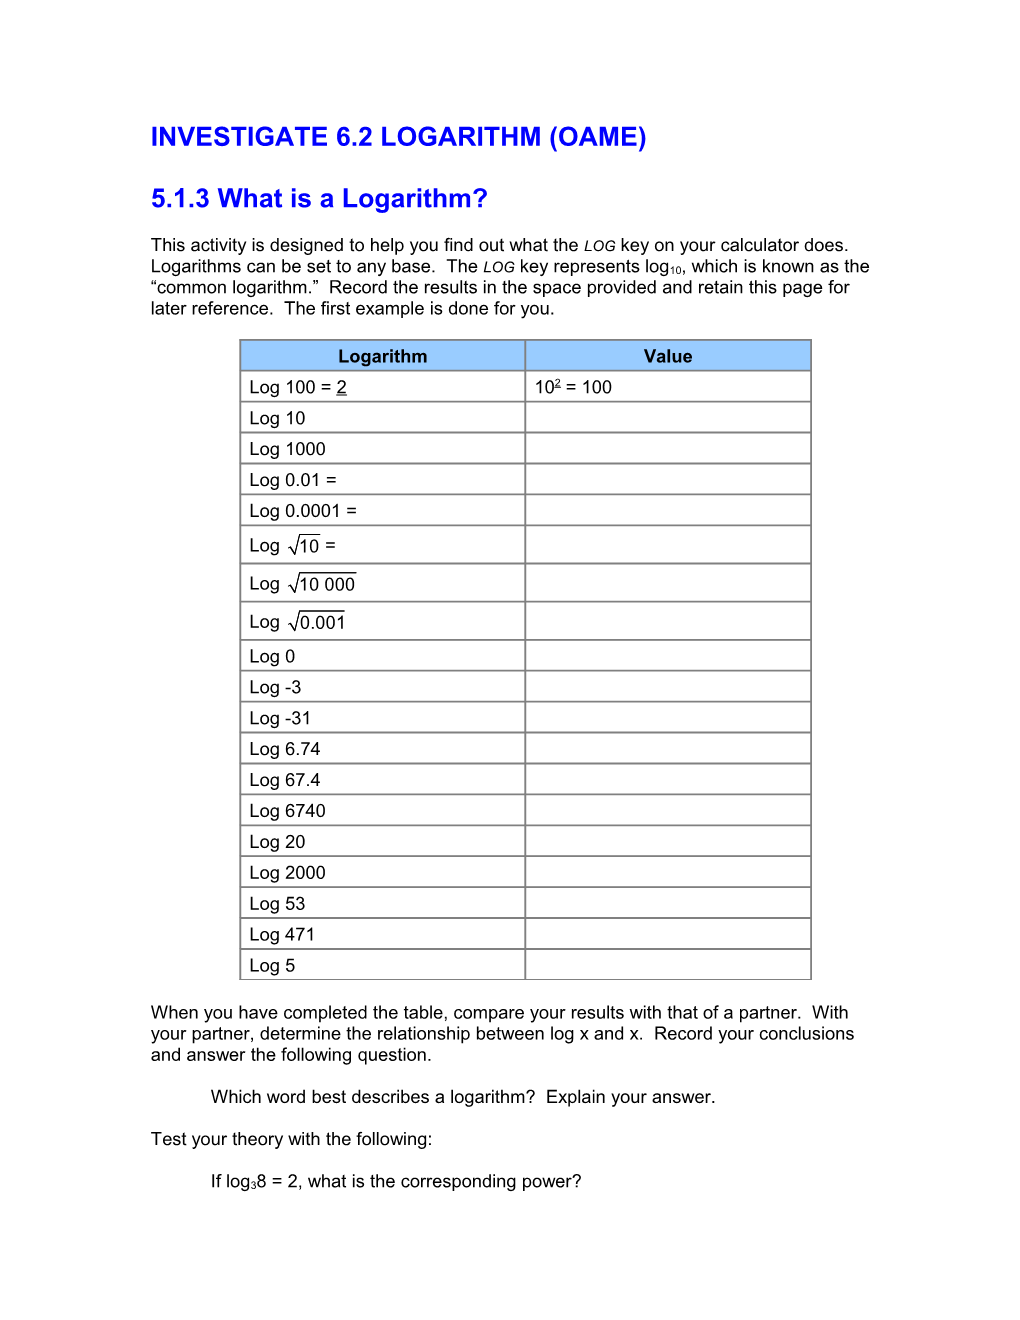 Investigate 6.2 Logarithm (Oame)